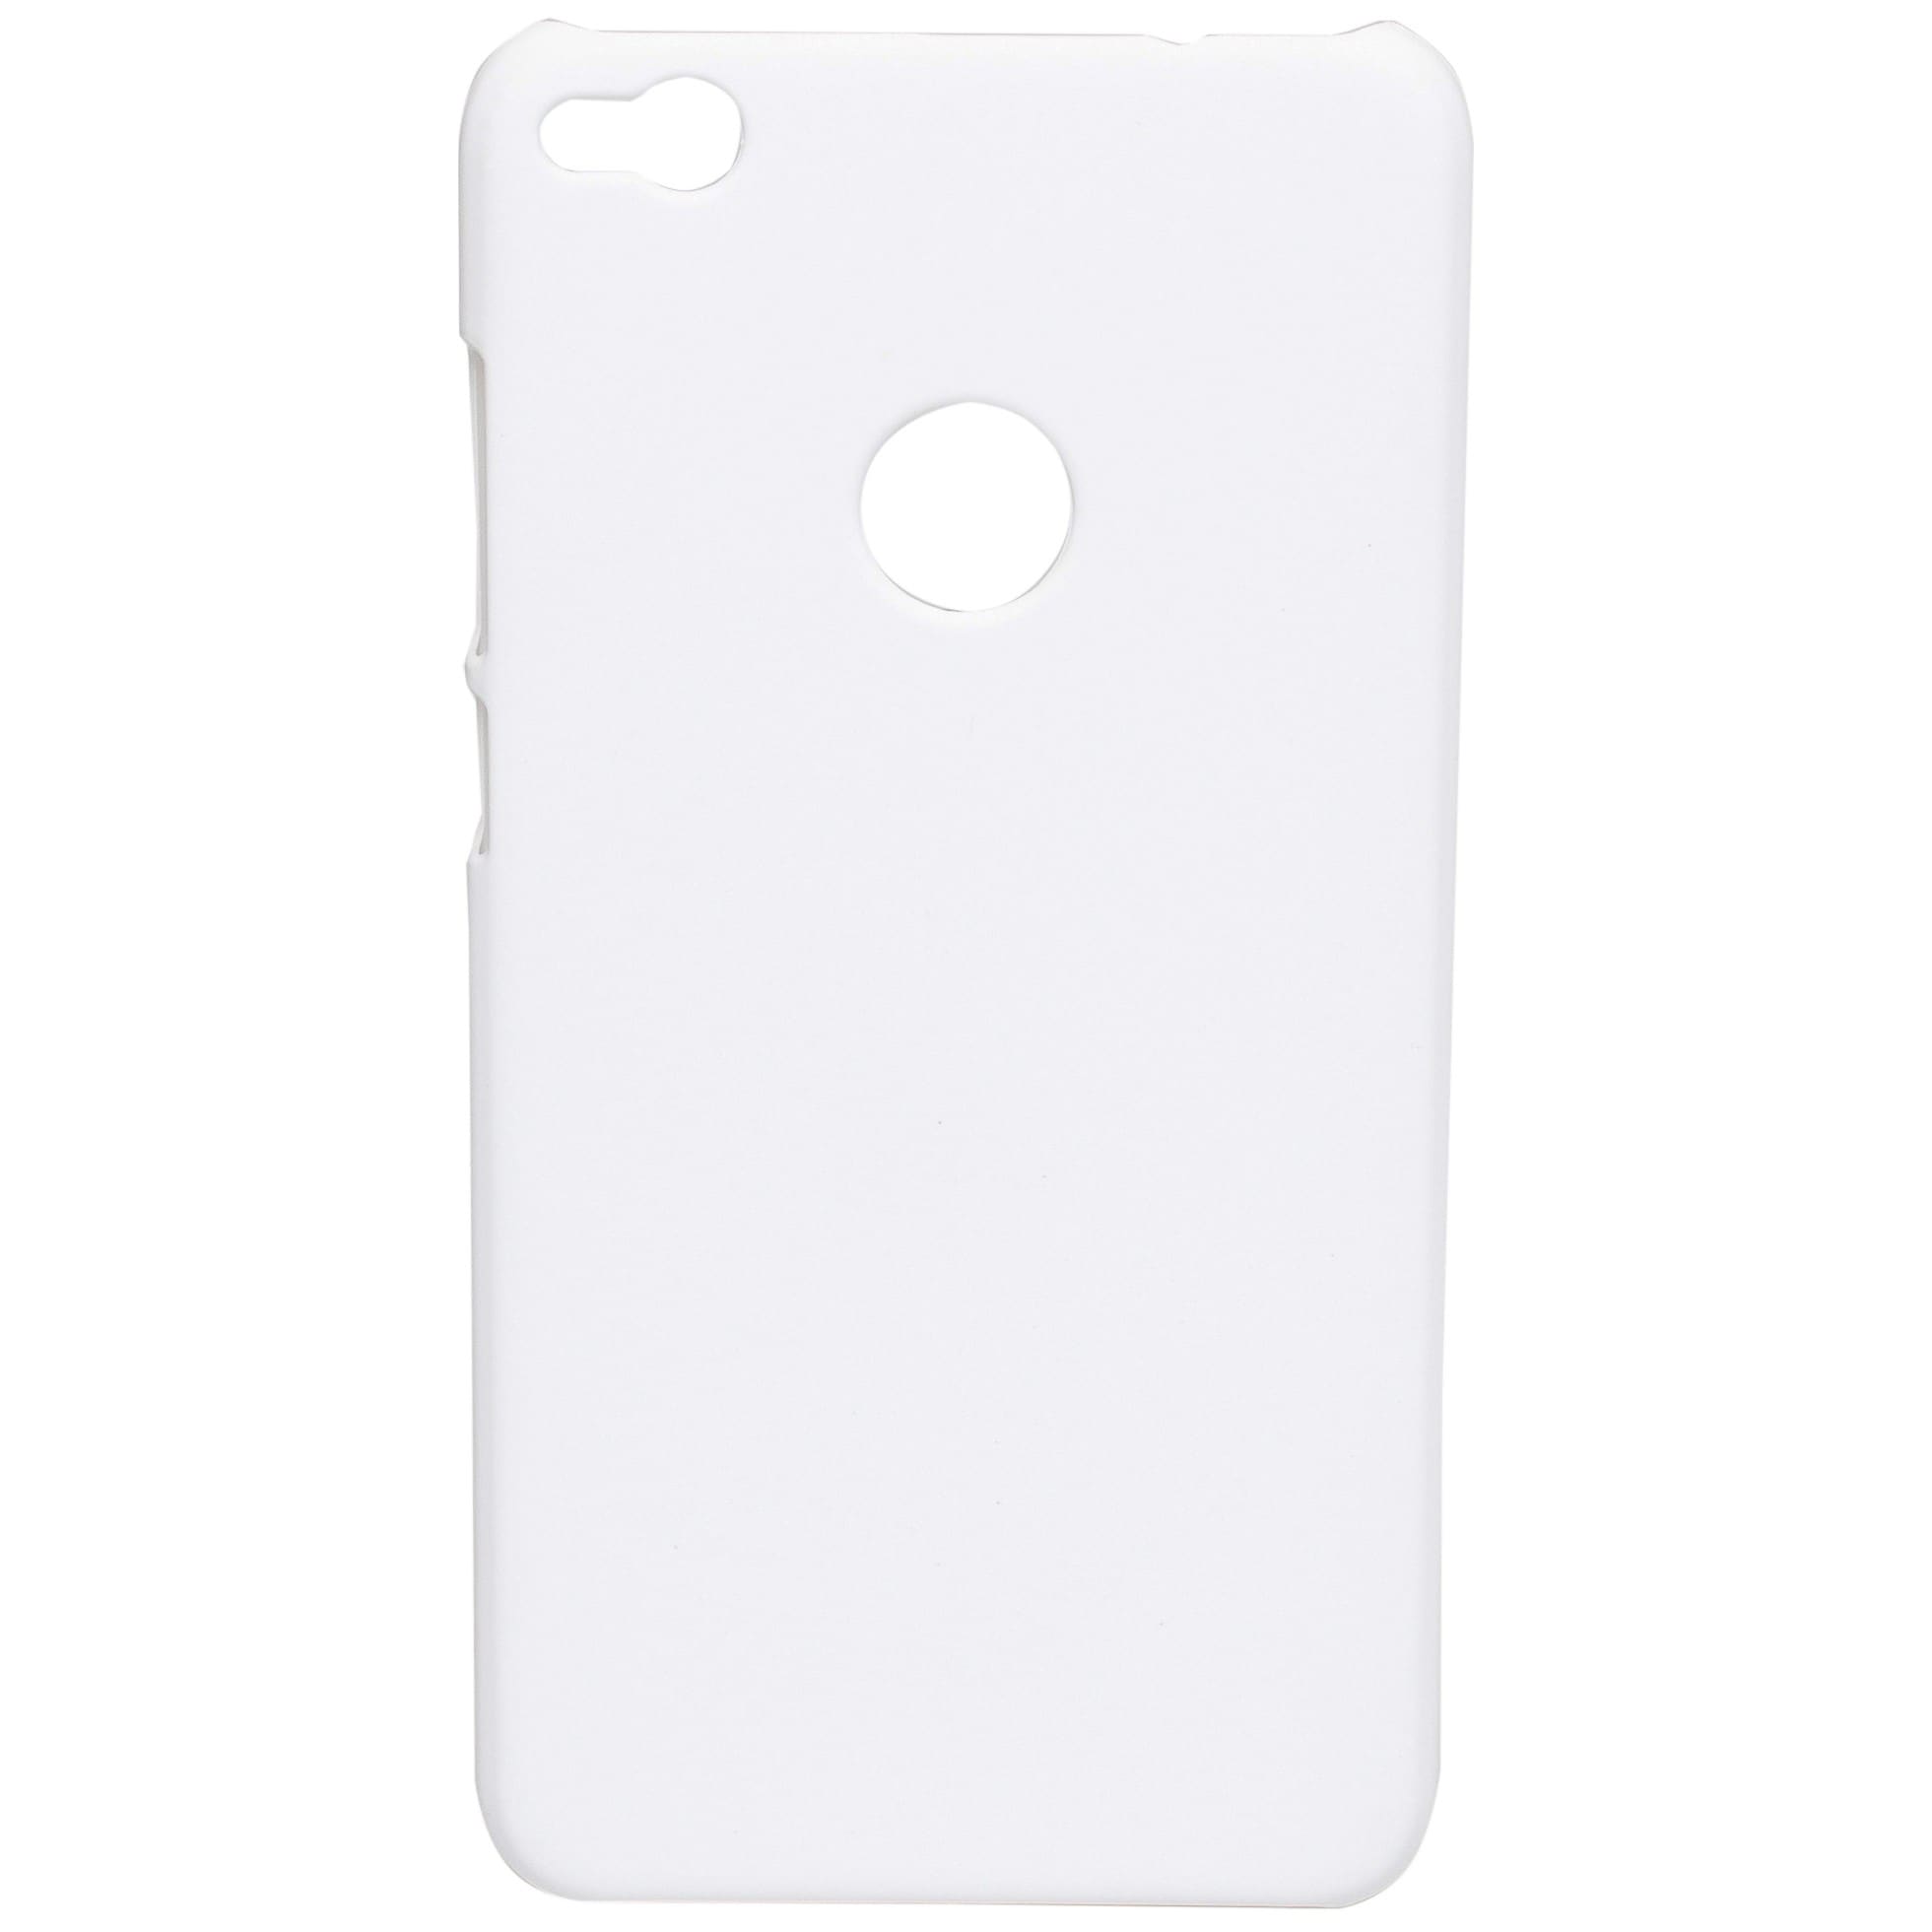 Gear Huawei Honor 8 Lite mobildeksel (hvit) - Deksler og etui til  mobiltelefon - Elkjøp